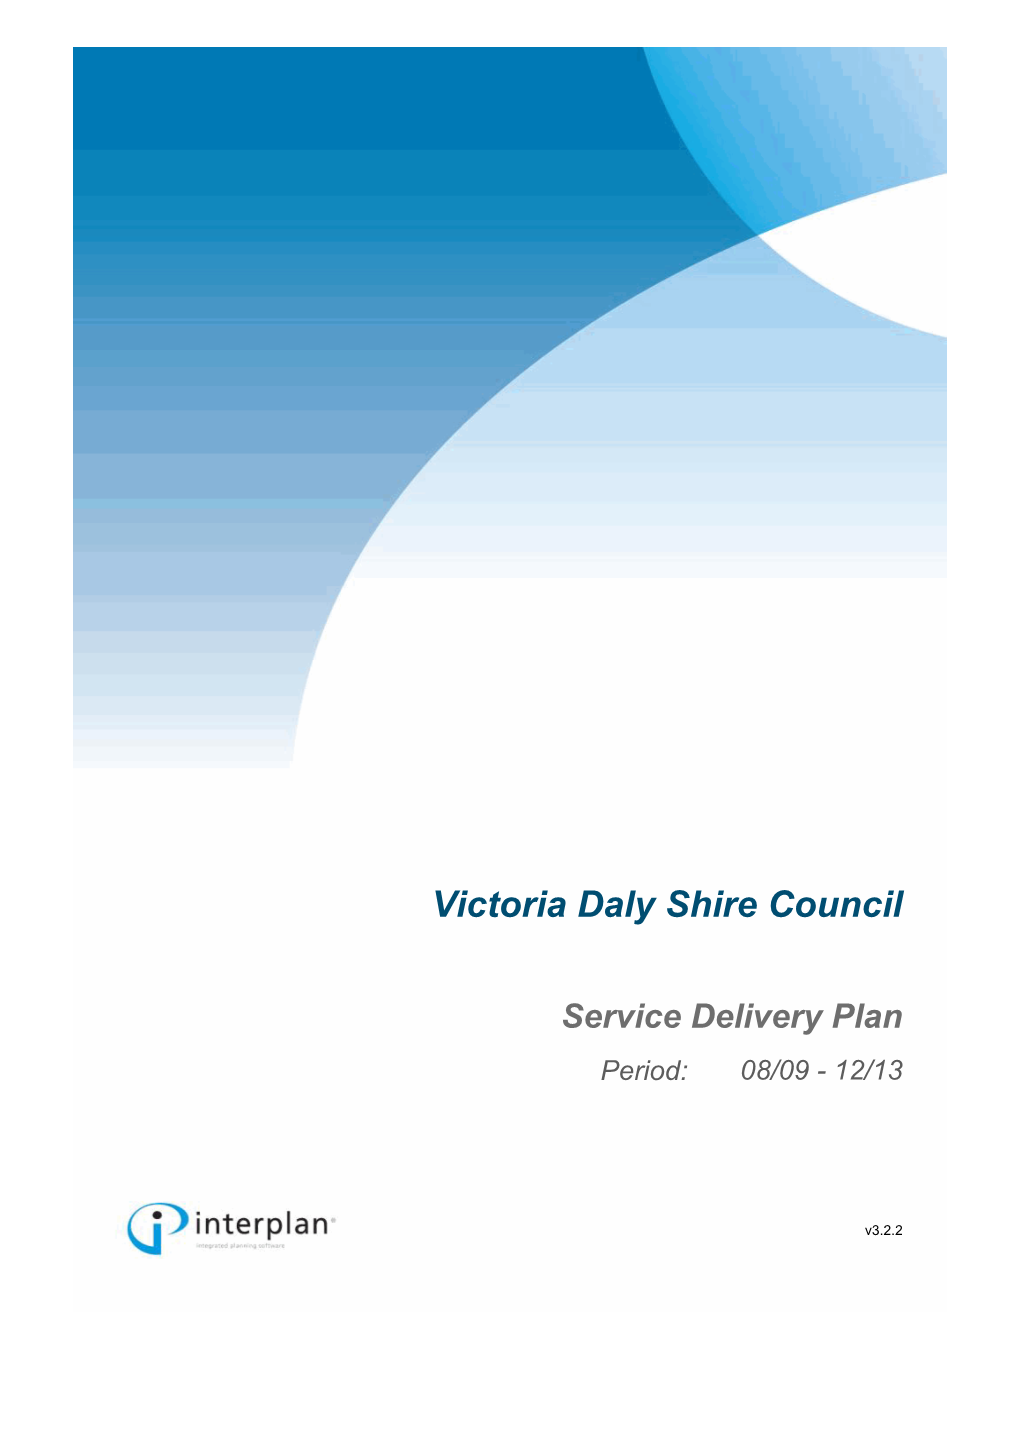 Victoria Daly Shire Council